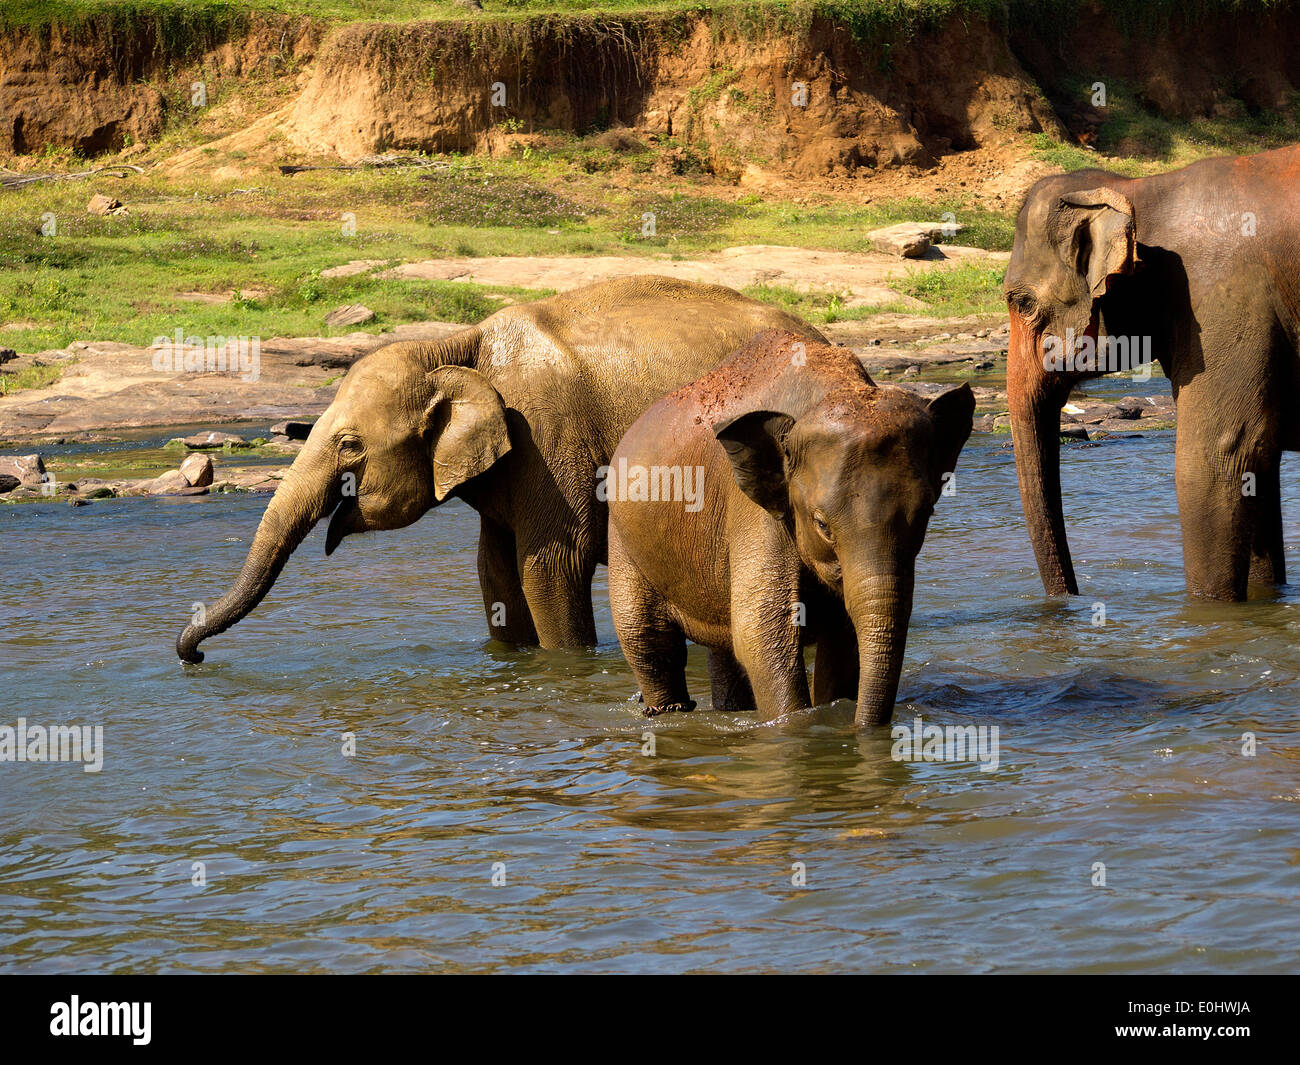 Elephant bathing at the orphanage in Sri Lanka Stock Photo